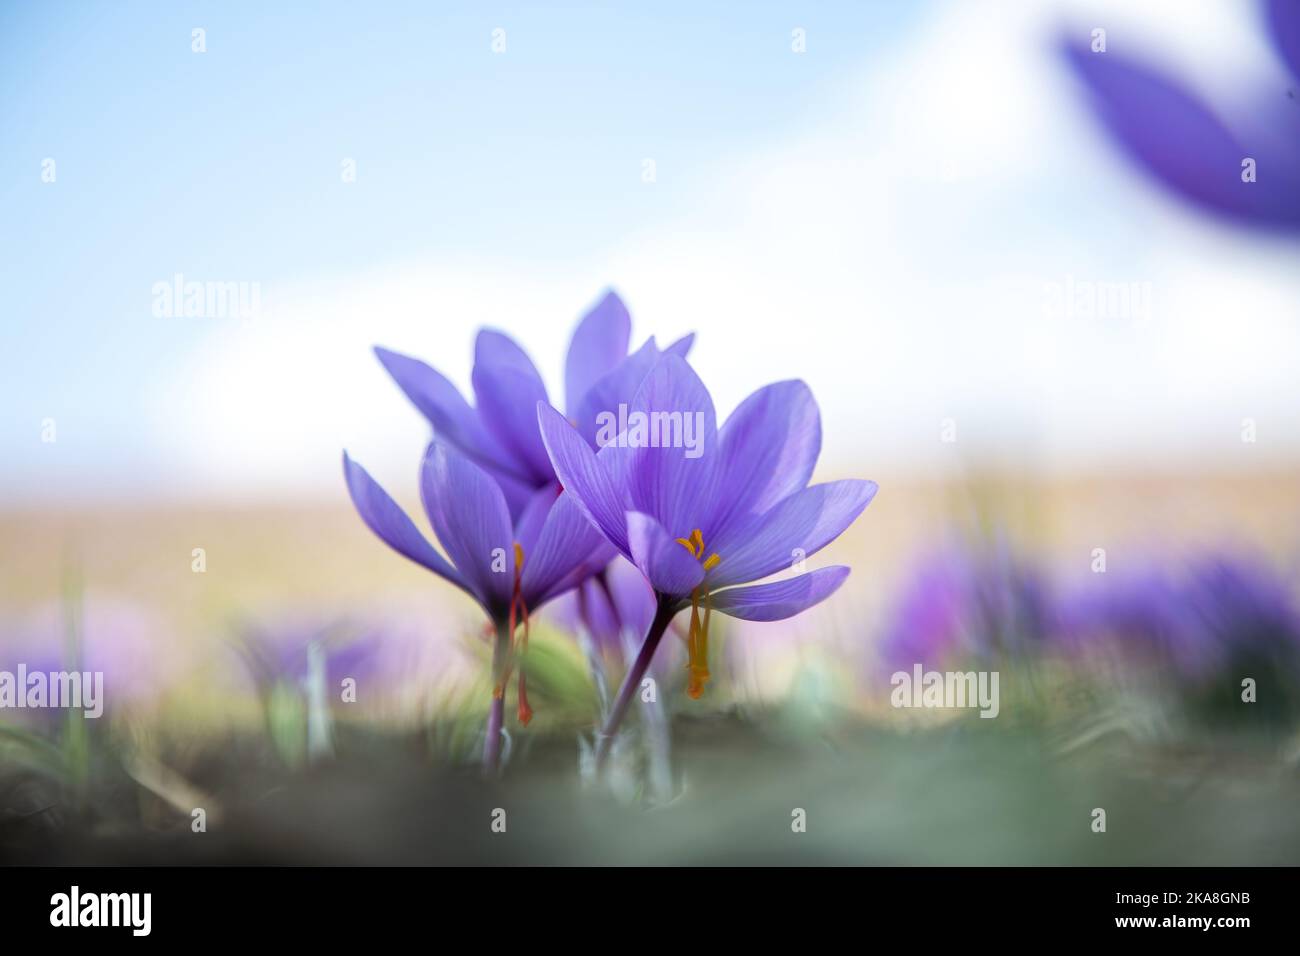 Safran blüht auf dem Feld. Crocus sativus blühende lila Pflanze auf dem Boden, Nahaufnahme. Erntezeit Stockfoto